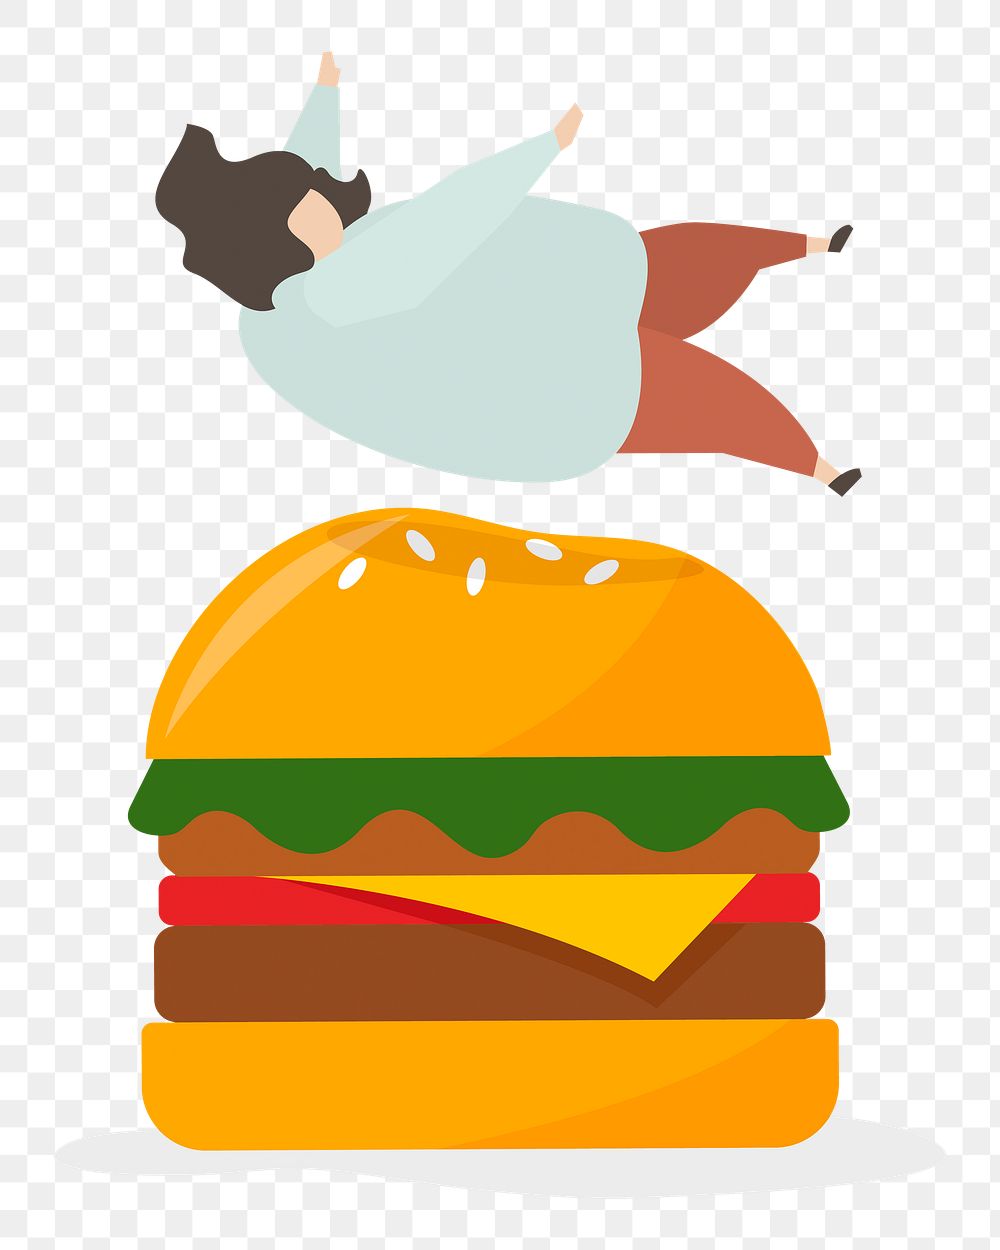 Burger illustration png image, transparent background